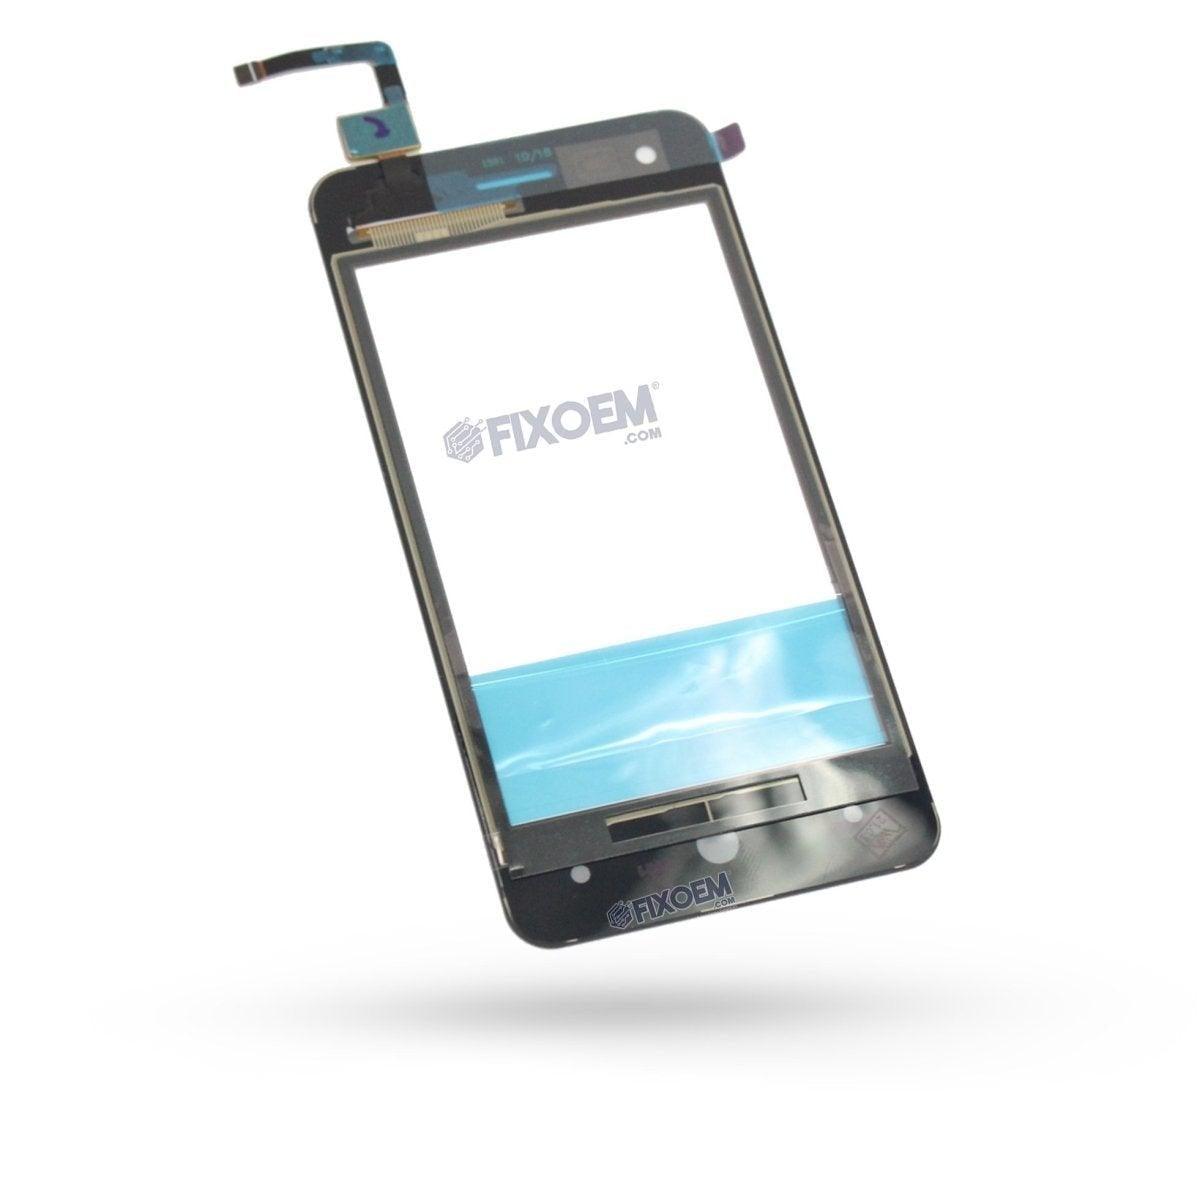 Touch Zte L130 a solo $ 100.00 Refaccion y puestos celulares, refurbish y microelectronica.- FixOEM